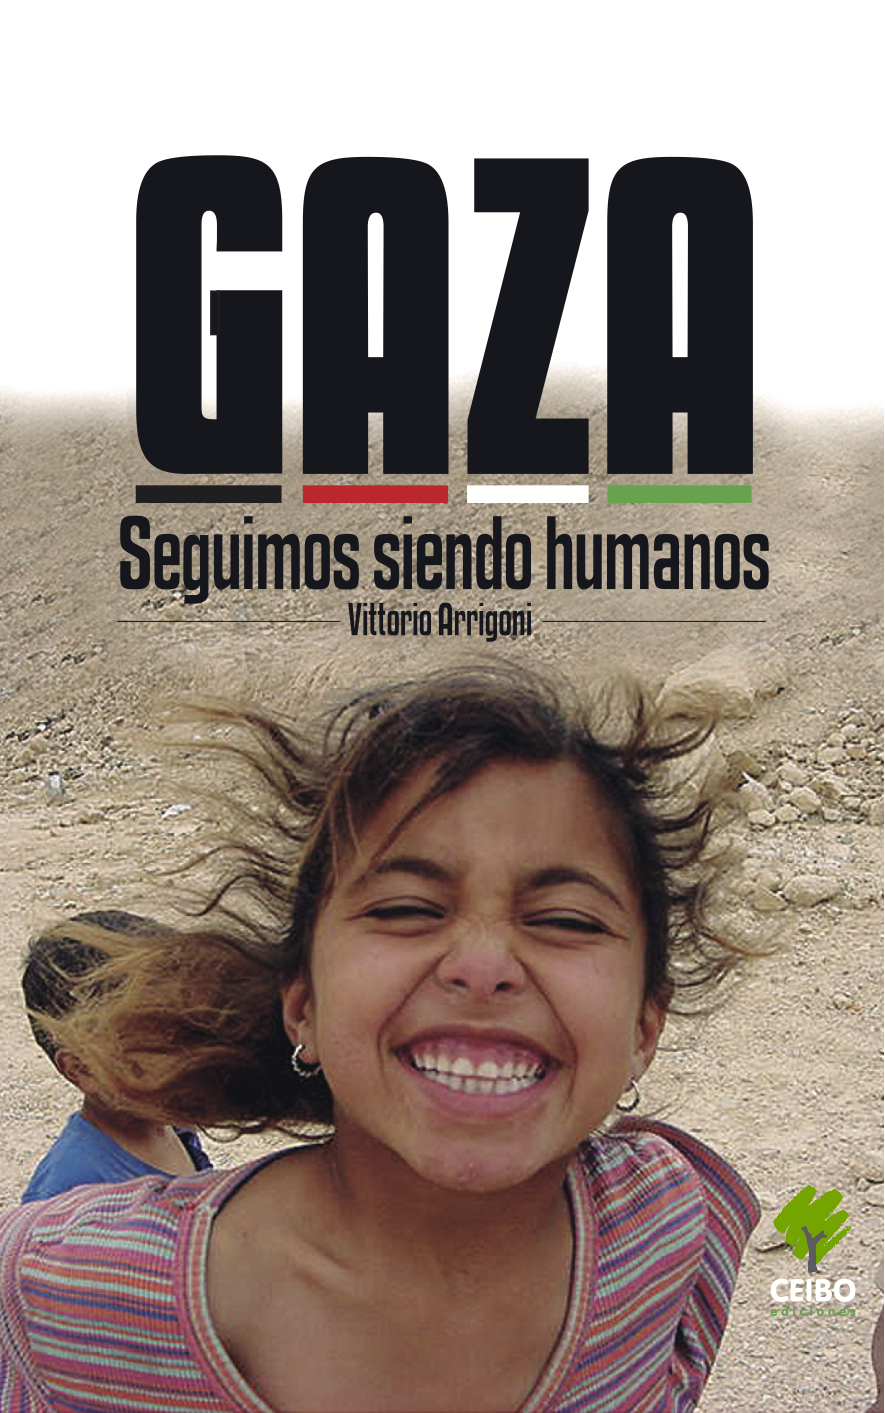 Presentarán este viernes libro de activista italiano asesinado en Gaza